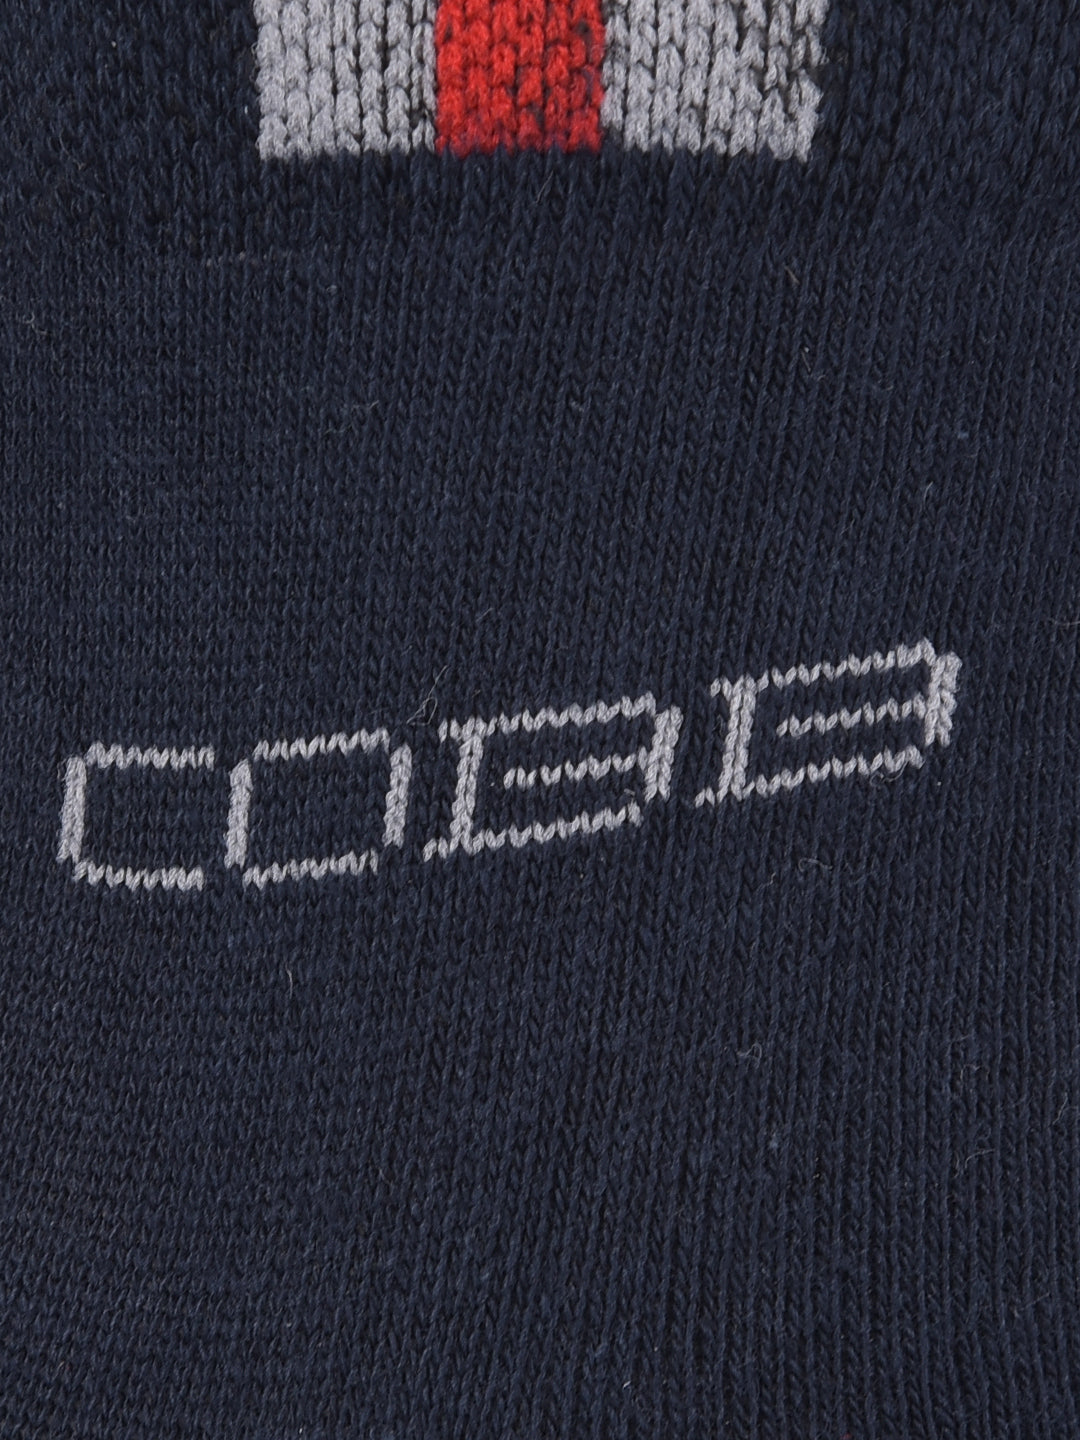 COBB NAVY BLUE ANKLE-LENGTH SOCKS